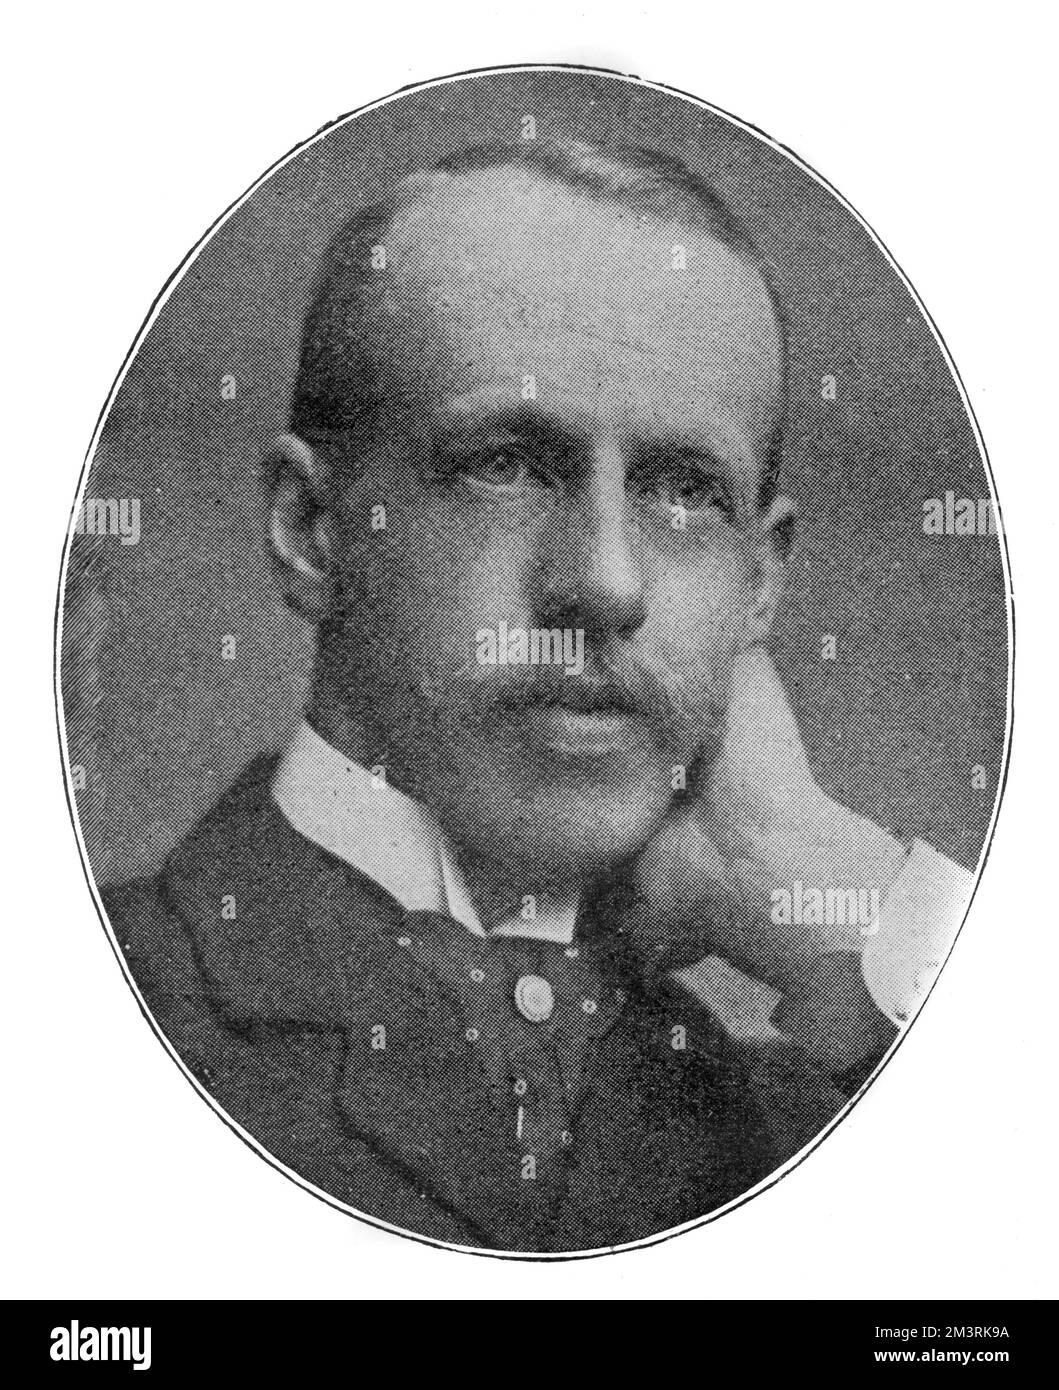 Sir John Murray IV (1851 - 1928), editore della Regina Vittoria, quarta scion della più antica casa editrice londinese. 1899 Foto Stock